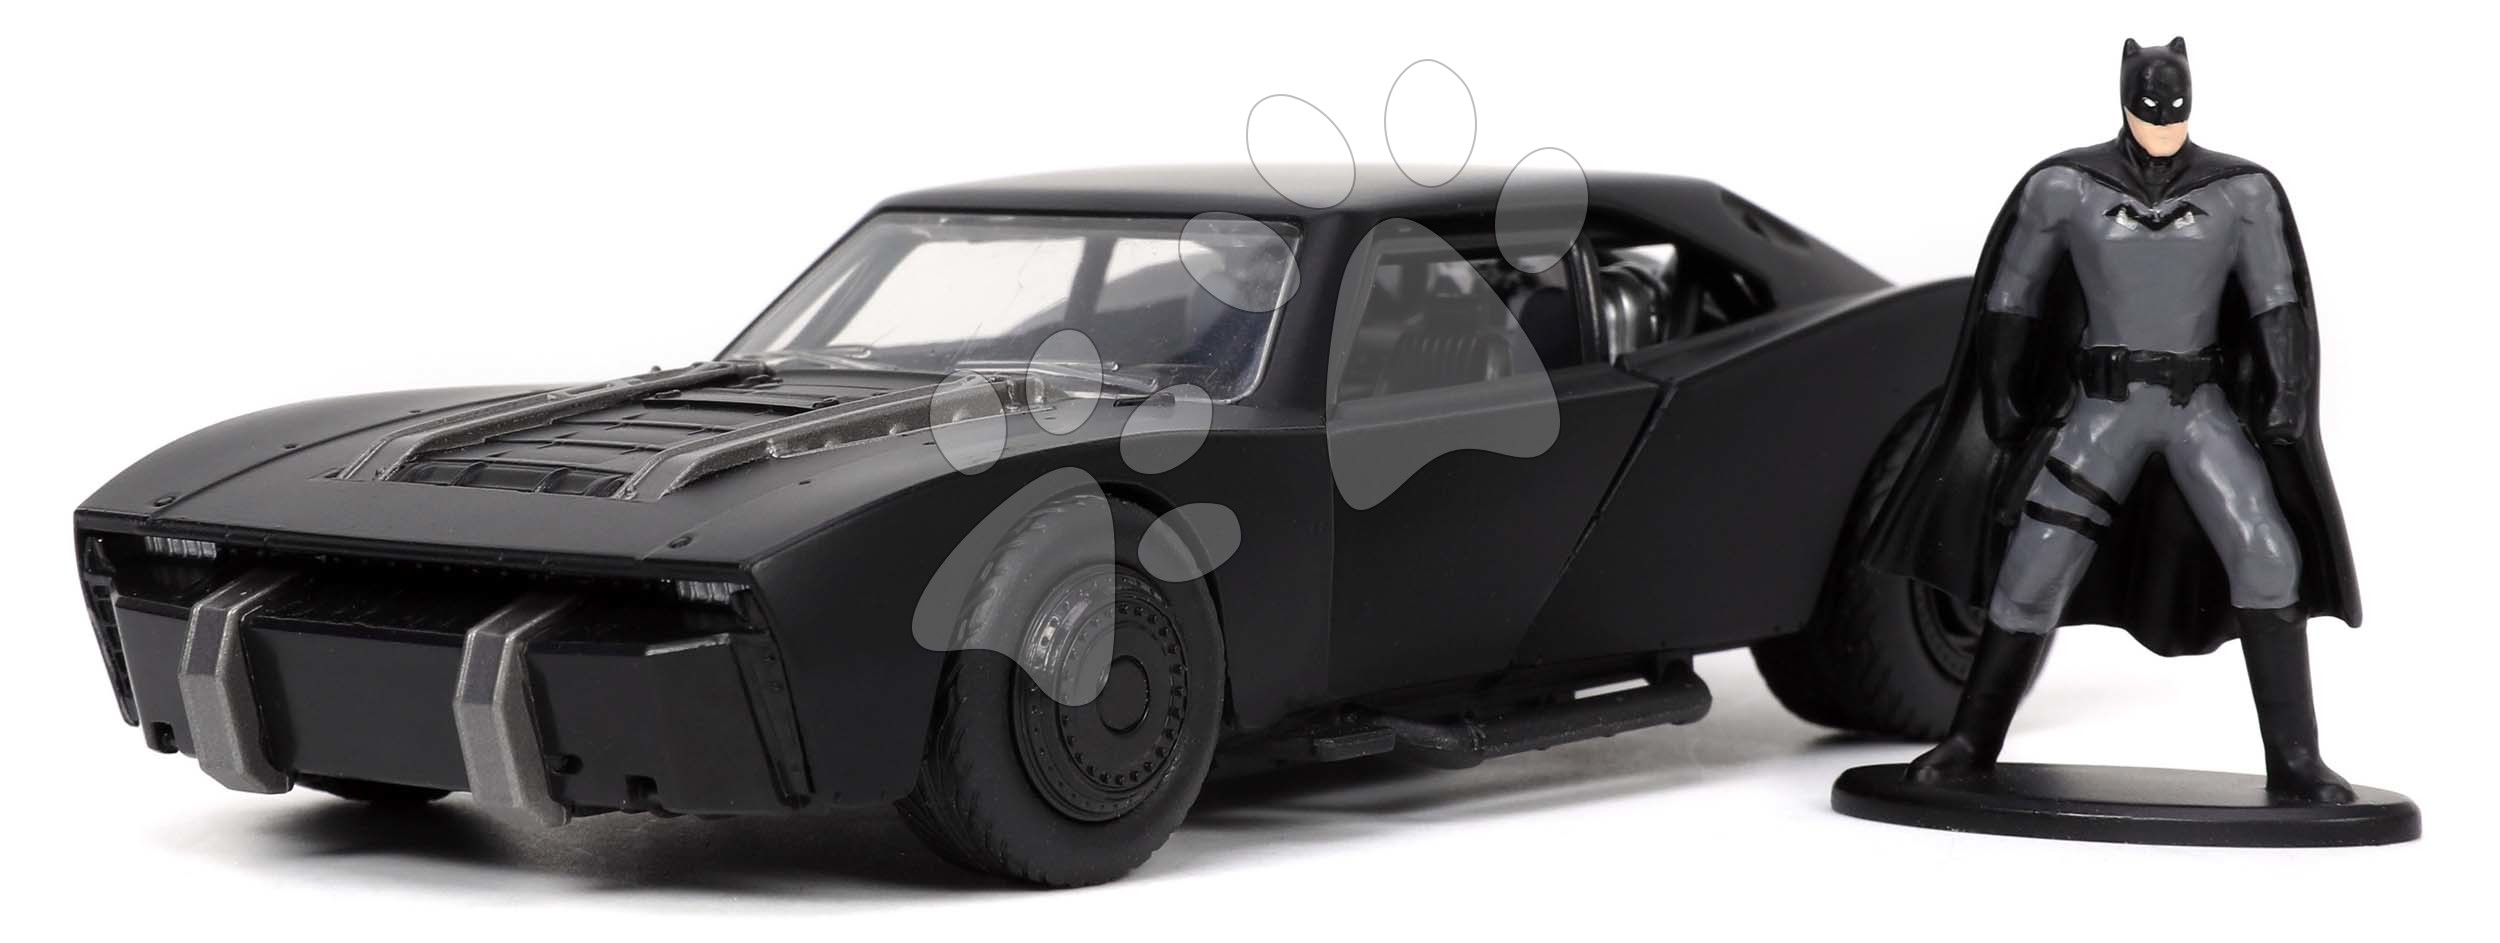 Kisautó Batman Batmobile 2022 Jada fém nyitható ajtókkal és Batmana figurával hossza 13,5 cm 1:32